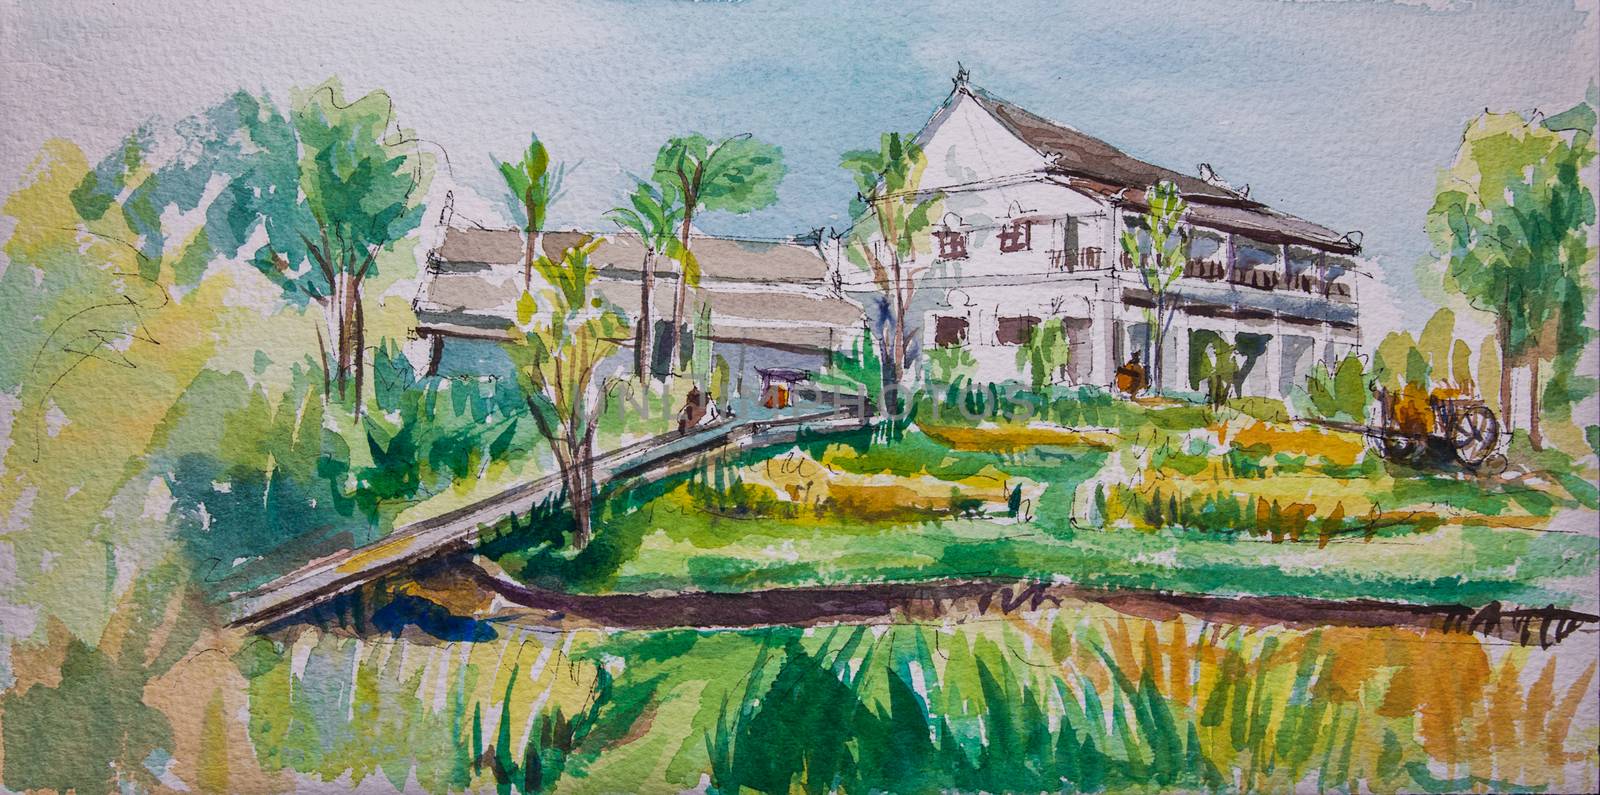 Green rice field in the villa,Gouache color technique on paper